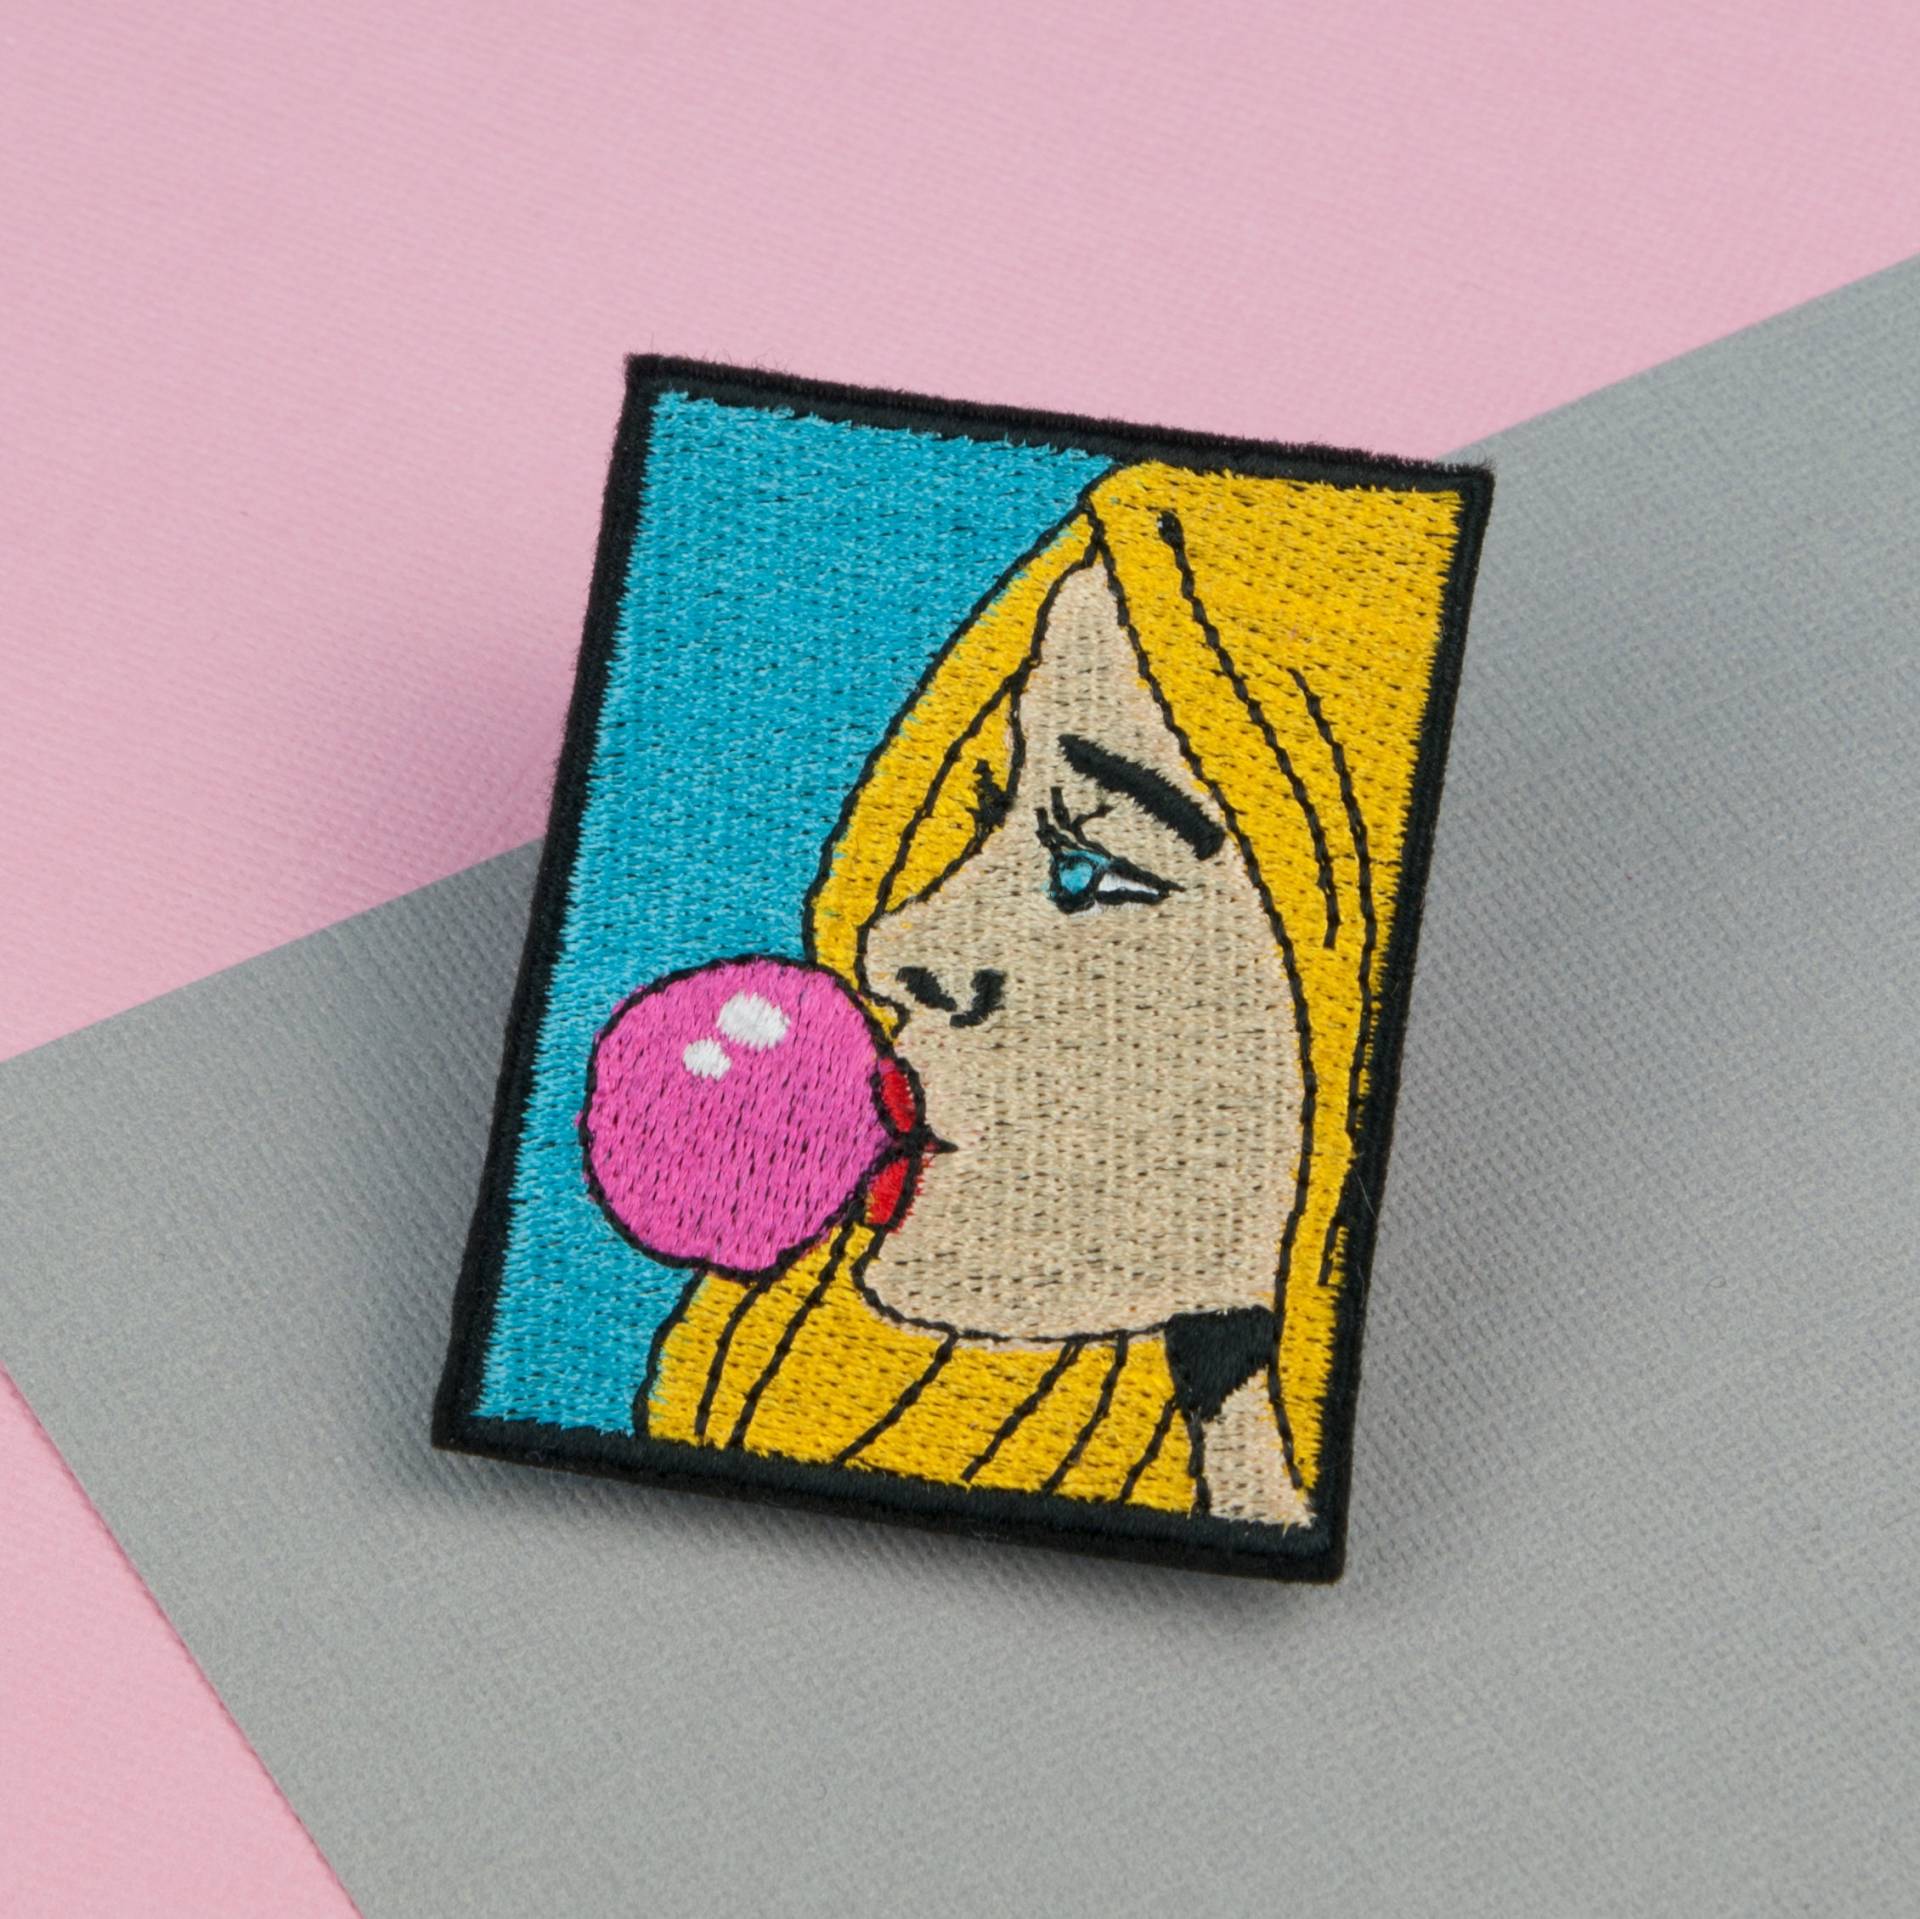 Bubble Gum Girl Bügelbild/Gang Patch Feminismus Stickerei Emaille Pin Aufnäher Hinten // Hatty Hats von HattyHatsEmbroidery